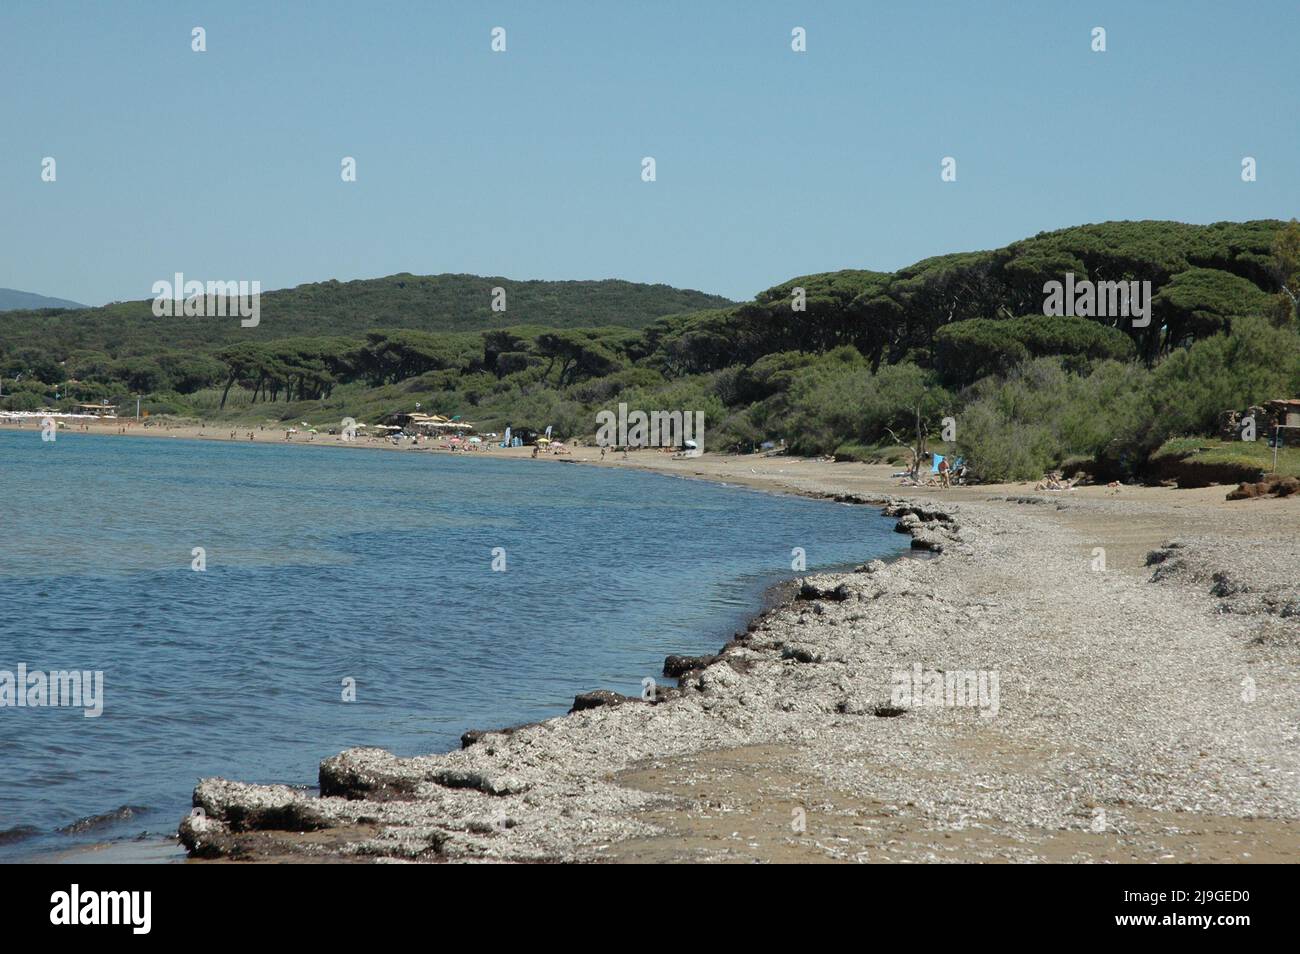 Spiaggia del golfo di Baratti. Livorno Foto Stock